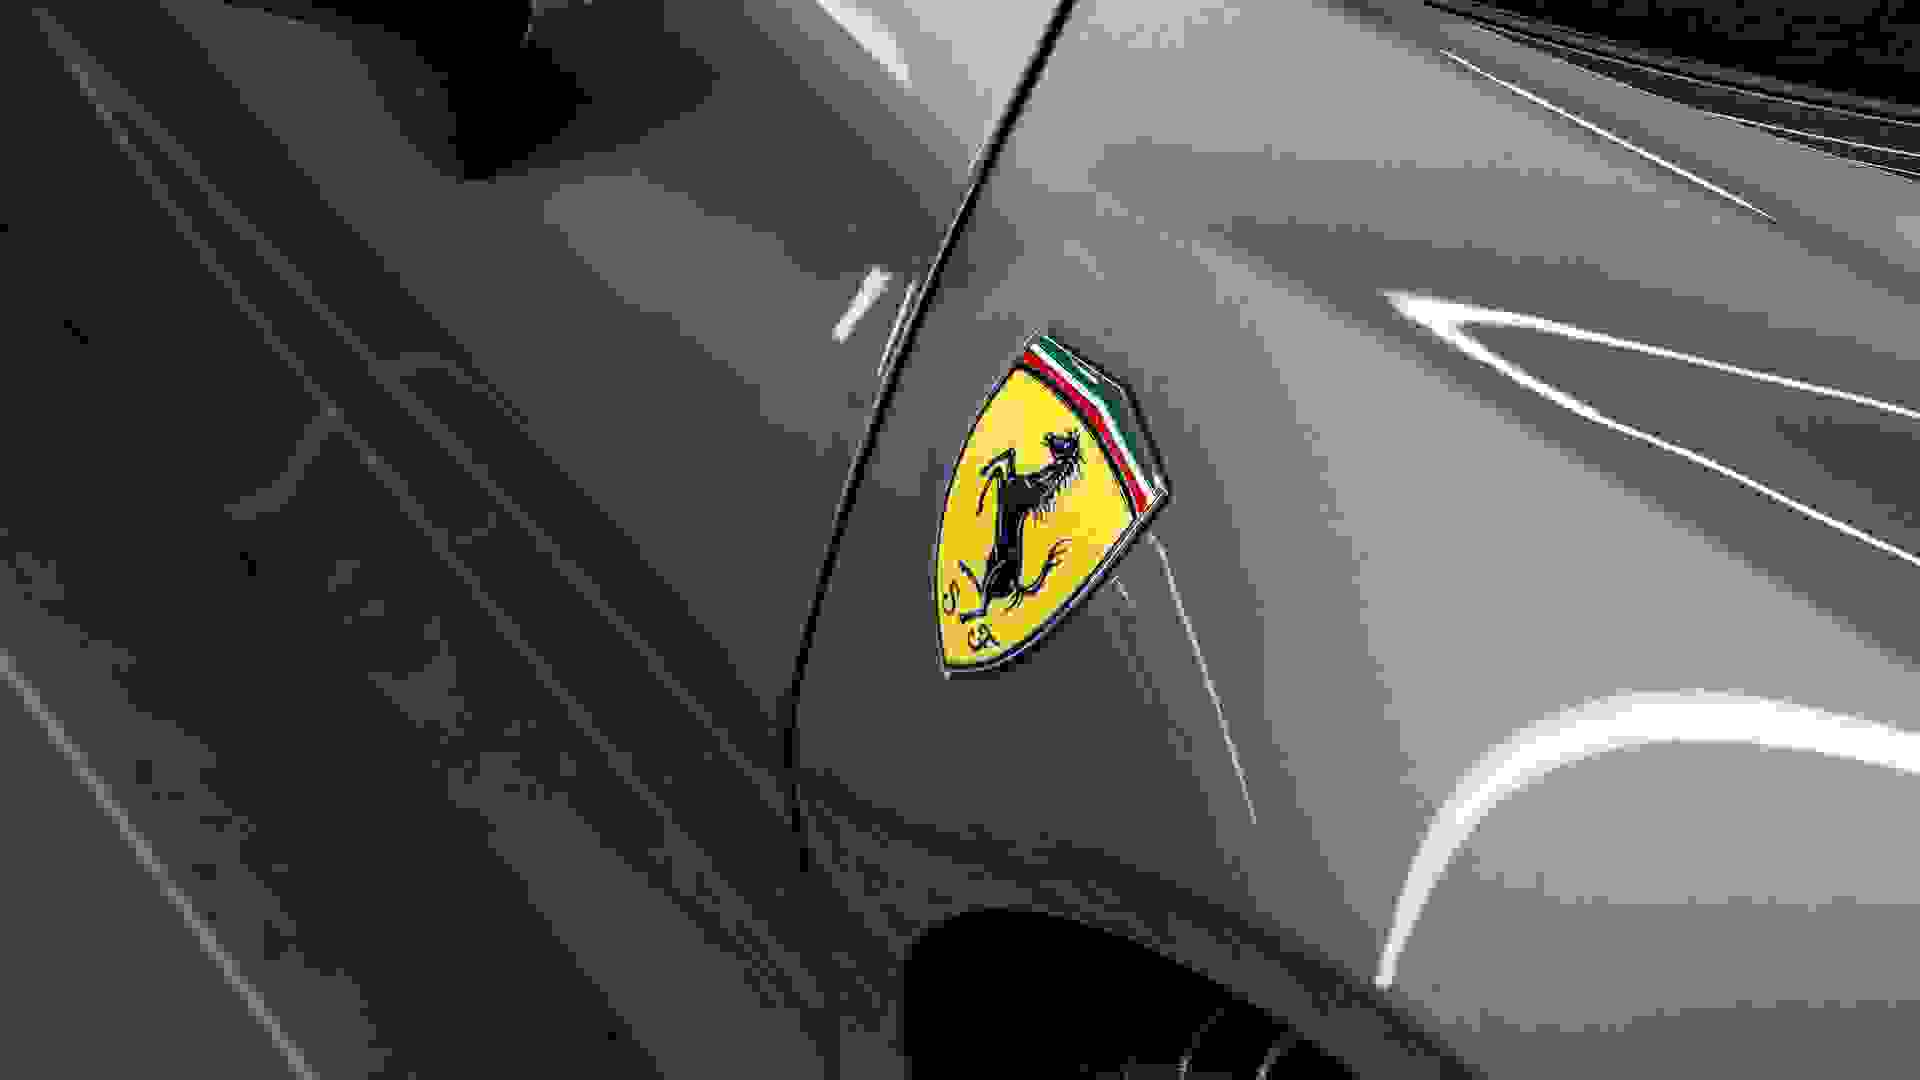 Ferrari SF90 Stradale Photo a19b4014-4c64-4461-bb43-d6bce07d7d1e.jpg